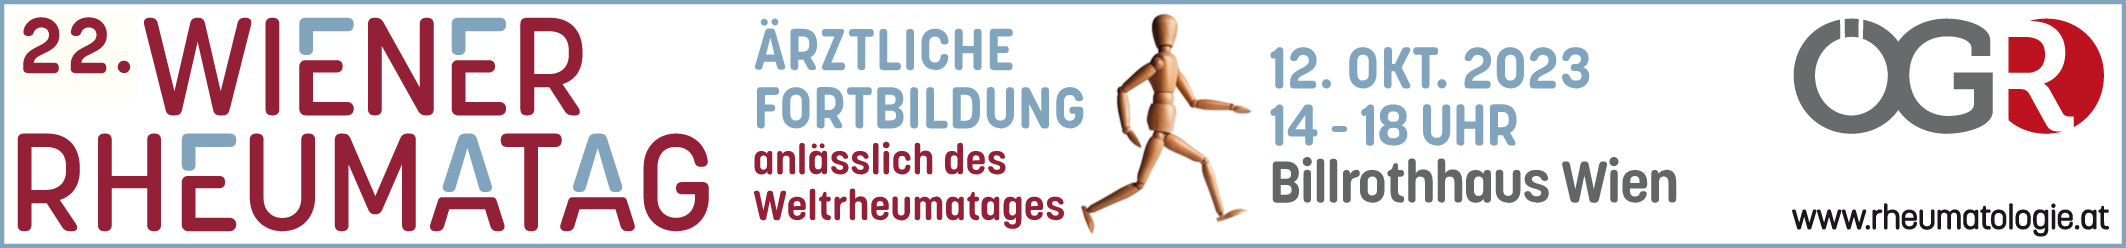 22. Wiener Rheumatag - Ärztliche Fortbildung